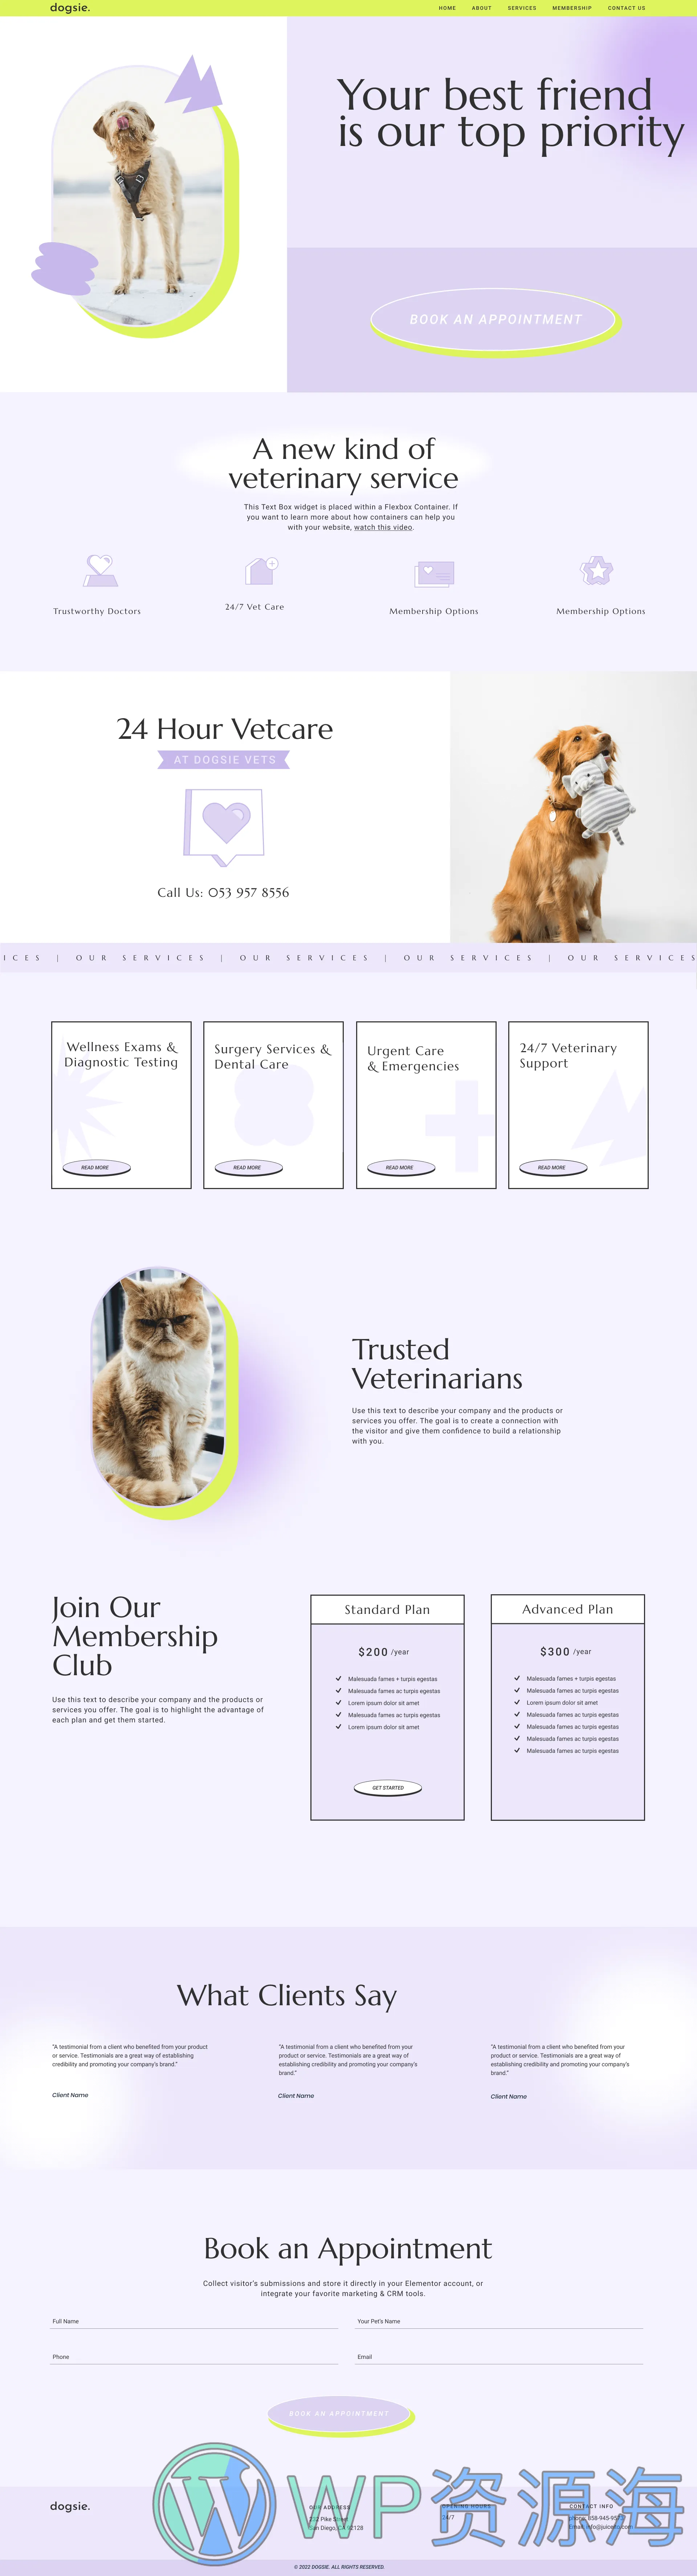 宠物诊所动物医院宠物服务中心网站成品模板_一键导入式快速建站模板插图-WordPress资源海